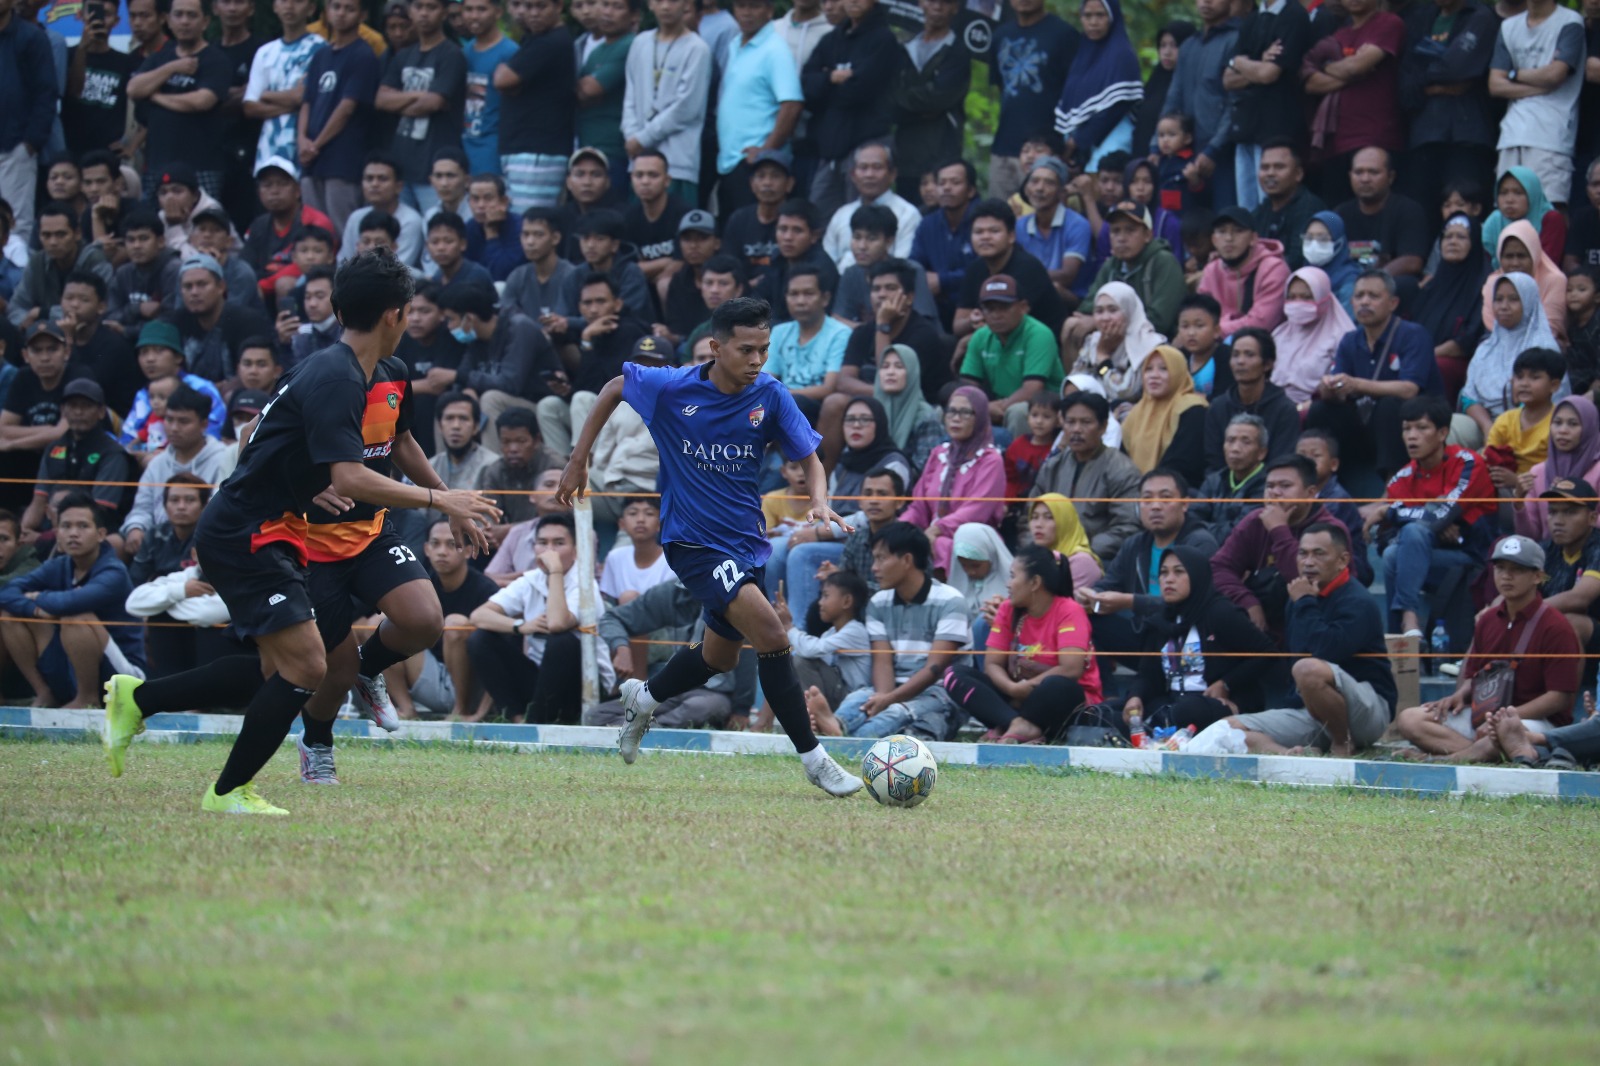 Mantap, Bapor Sepakbola RU IV Cilacap Juara Turnamen Danlanud Cup 2023